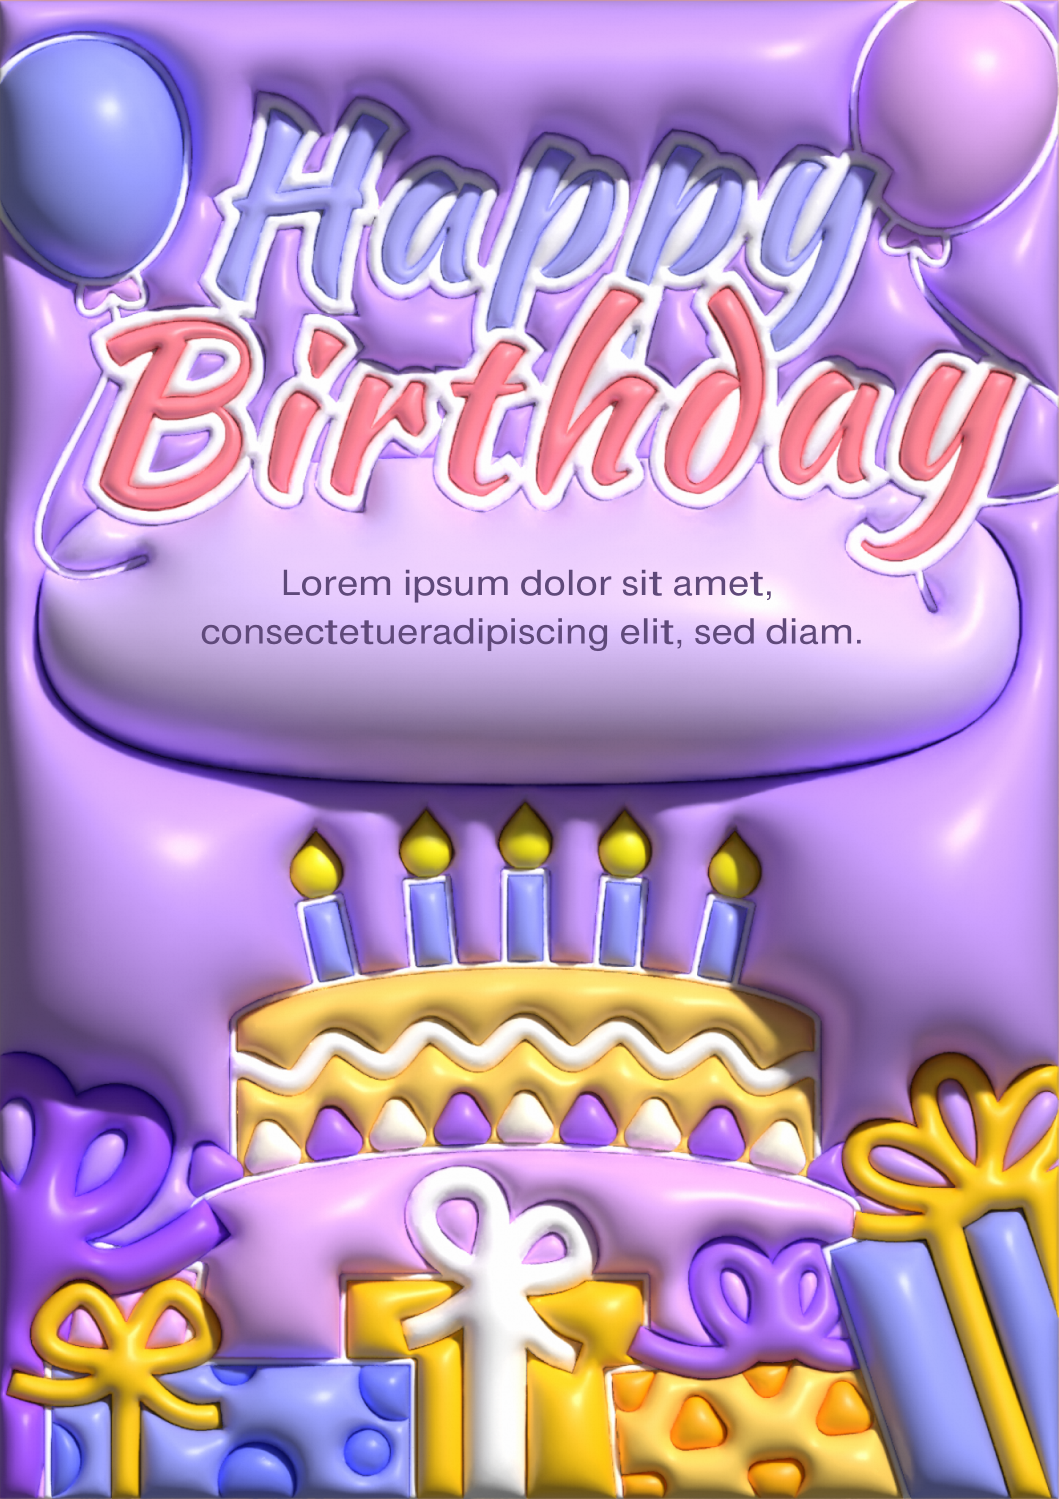 Birthday Wishes to Myself 3